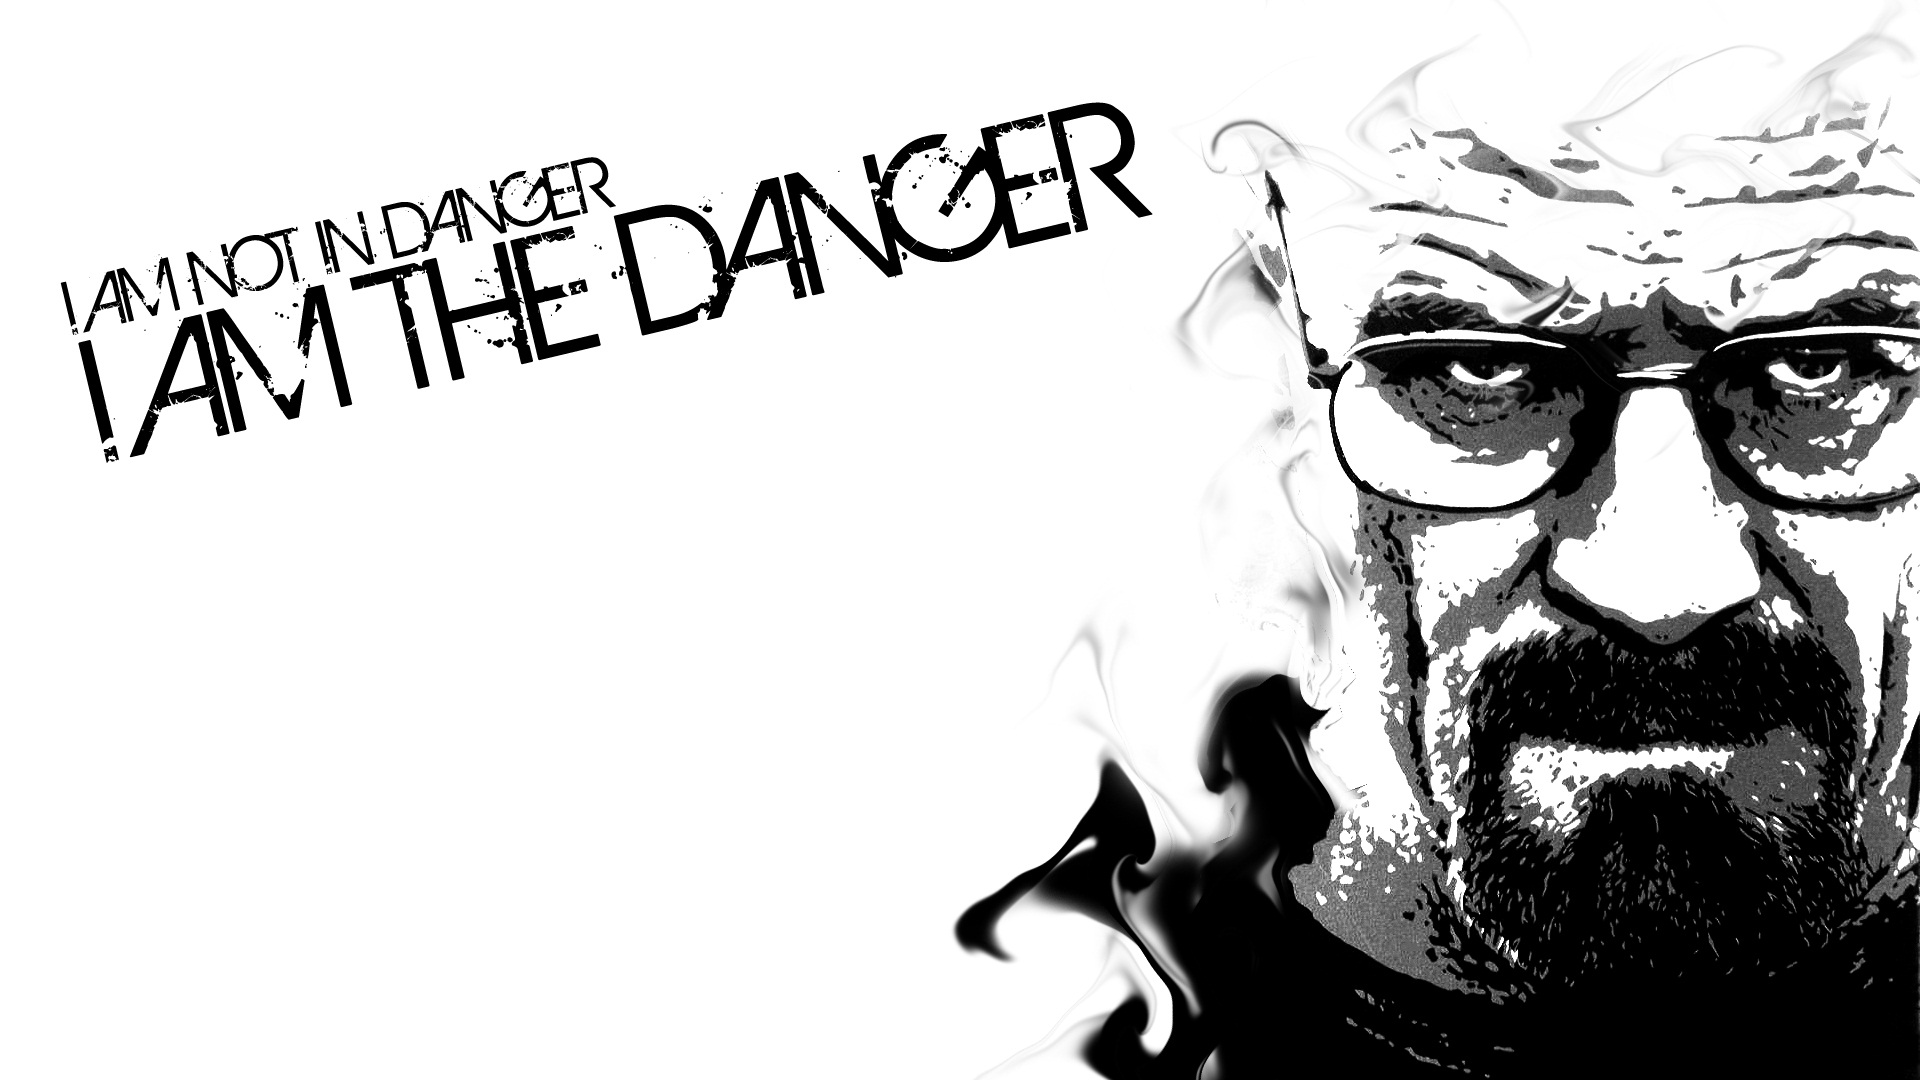 I+am+not+in+danger+Skyler+I+am+the+danger+_c0f123c07e92563d9ecc576e78befe46.jpg